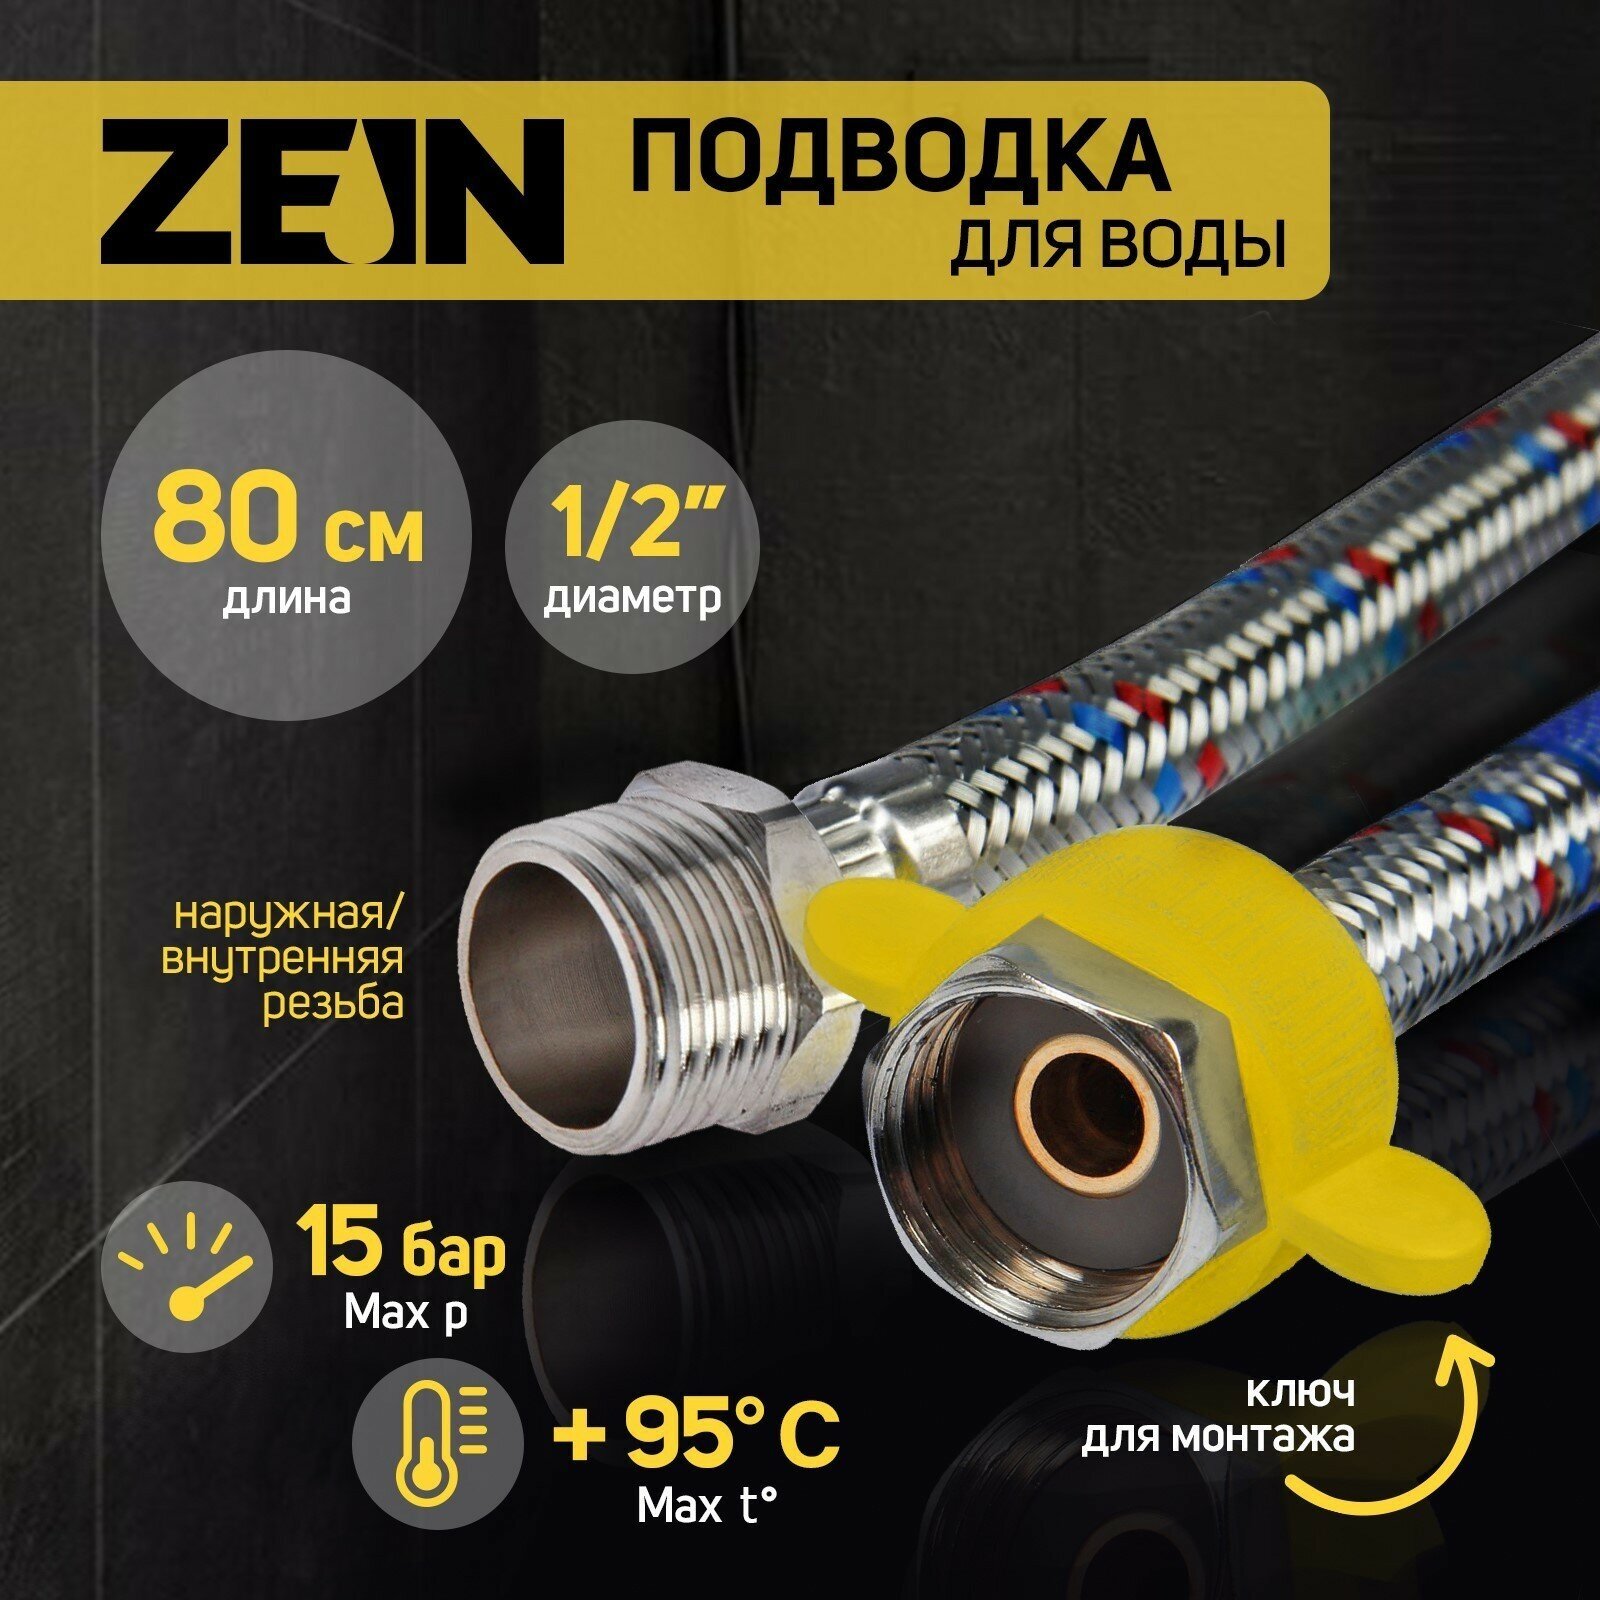 Гибкая подводка для воды ZEIN 5149032 гайка - уцер ½